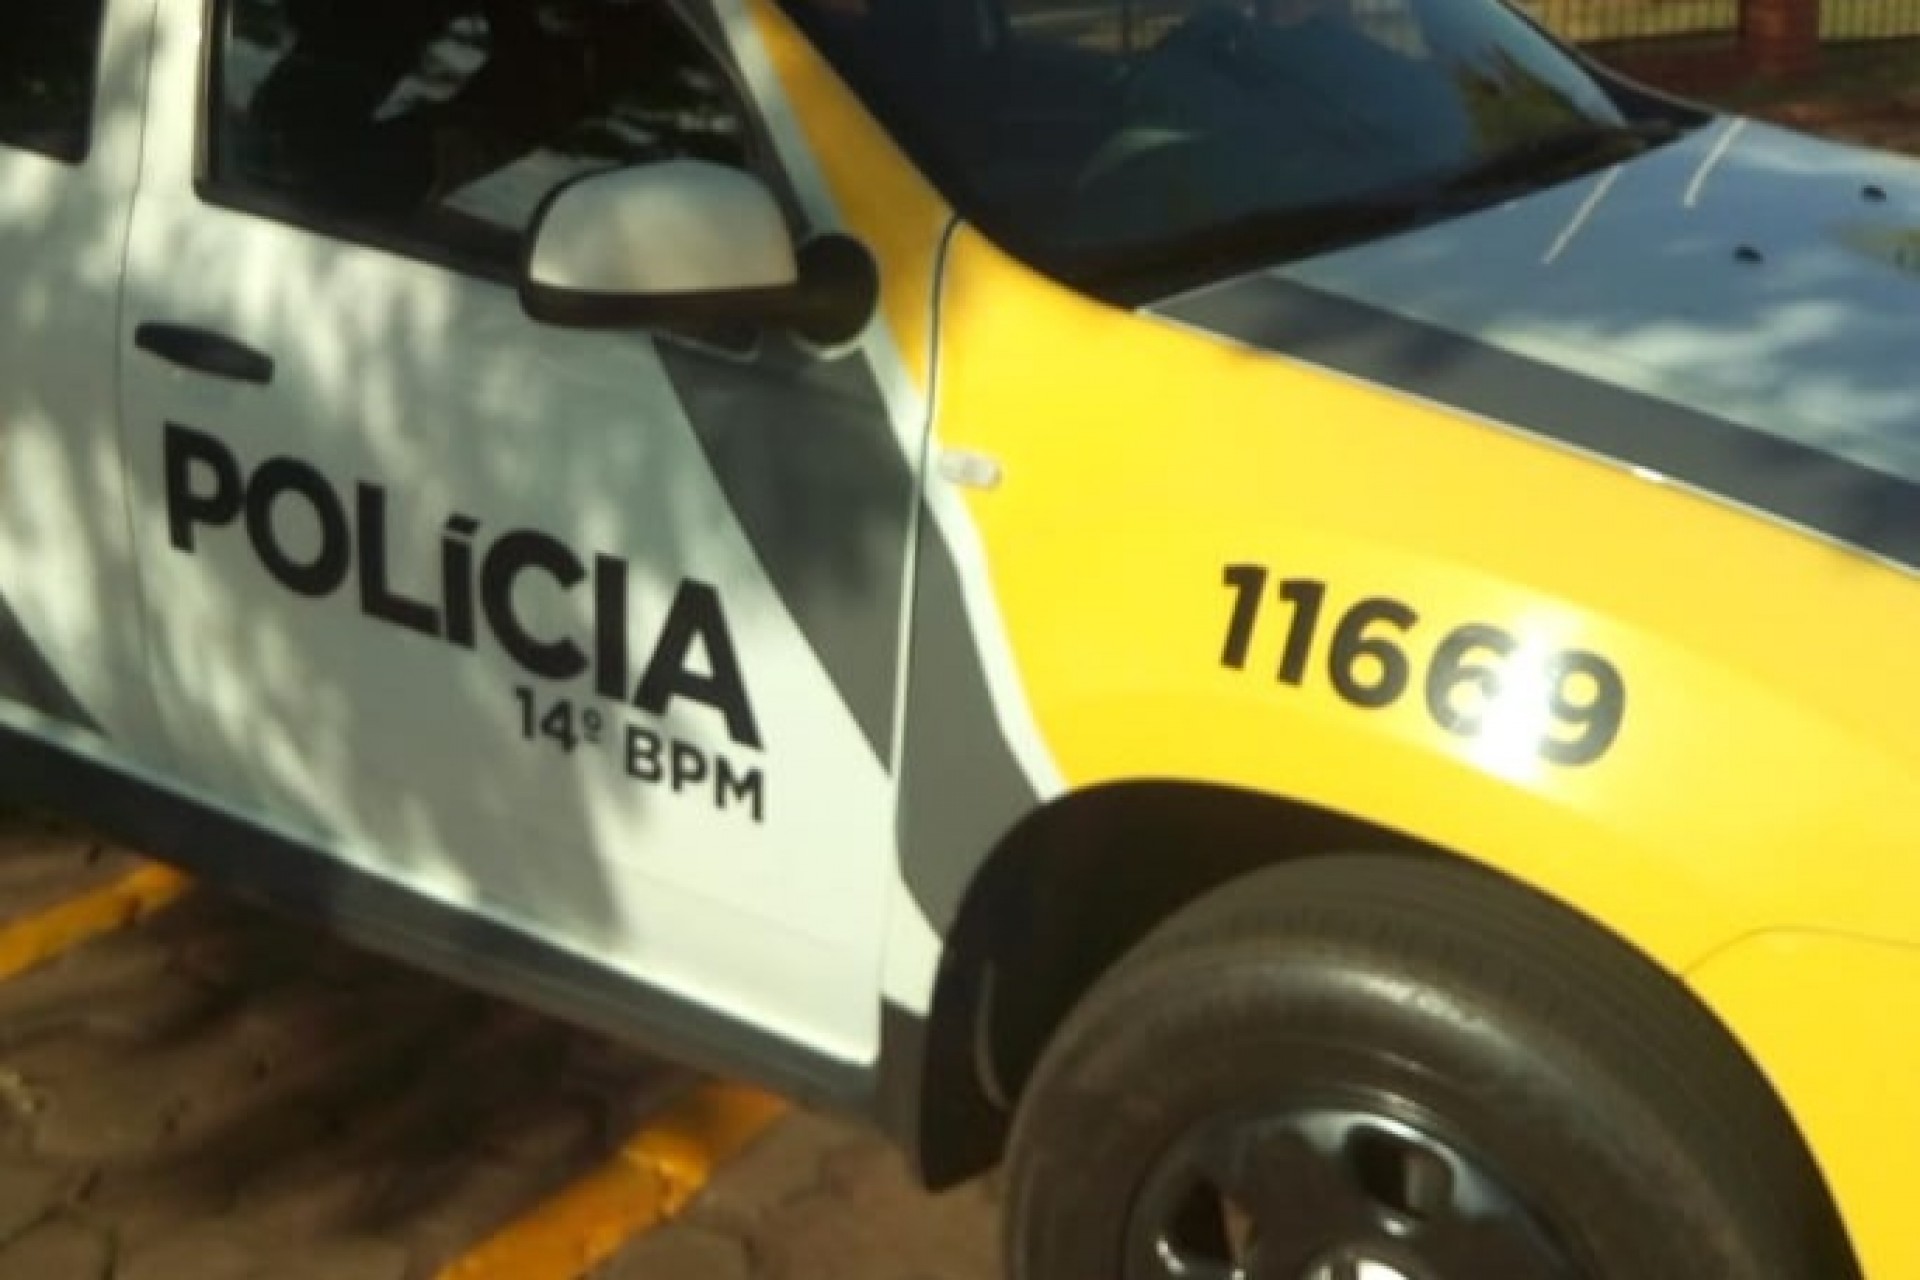 Policia Militar cumpre mandado de prisão em Itaipulândia